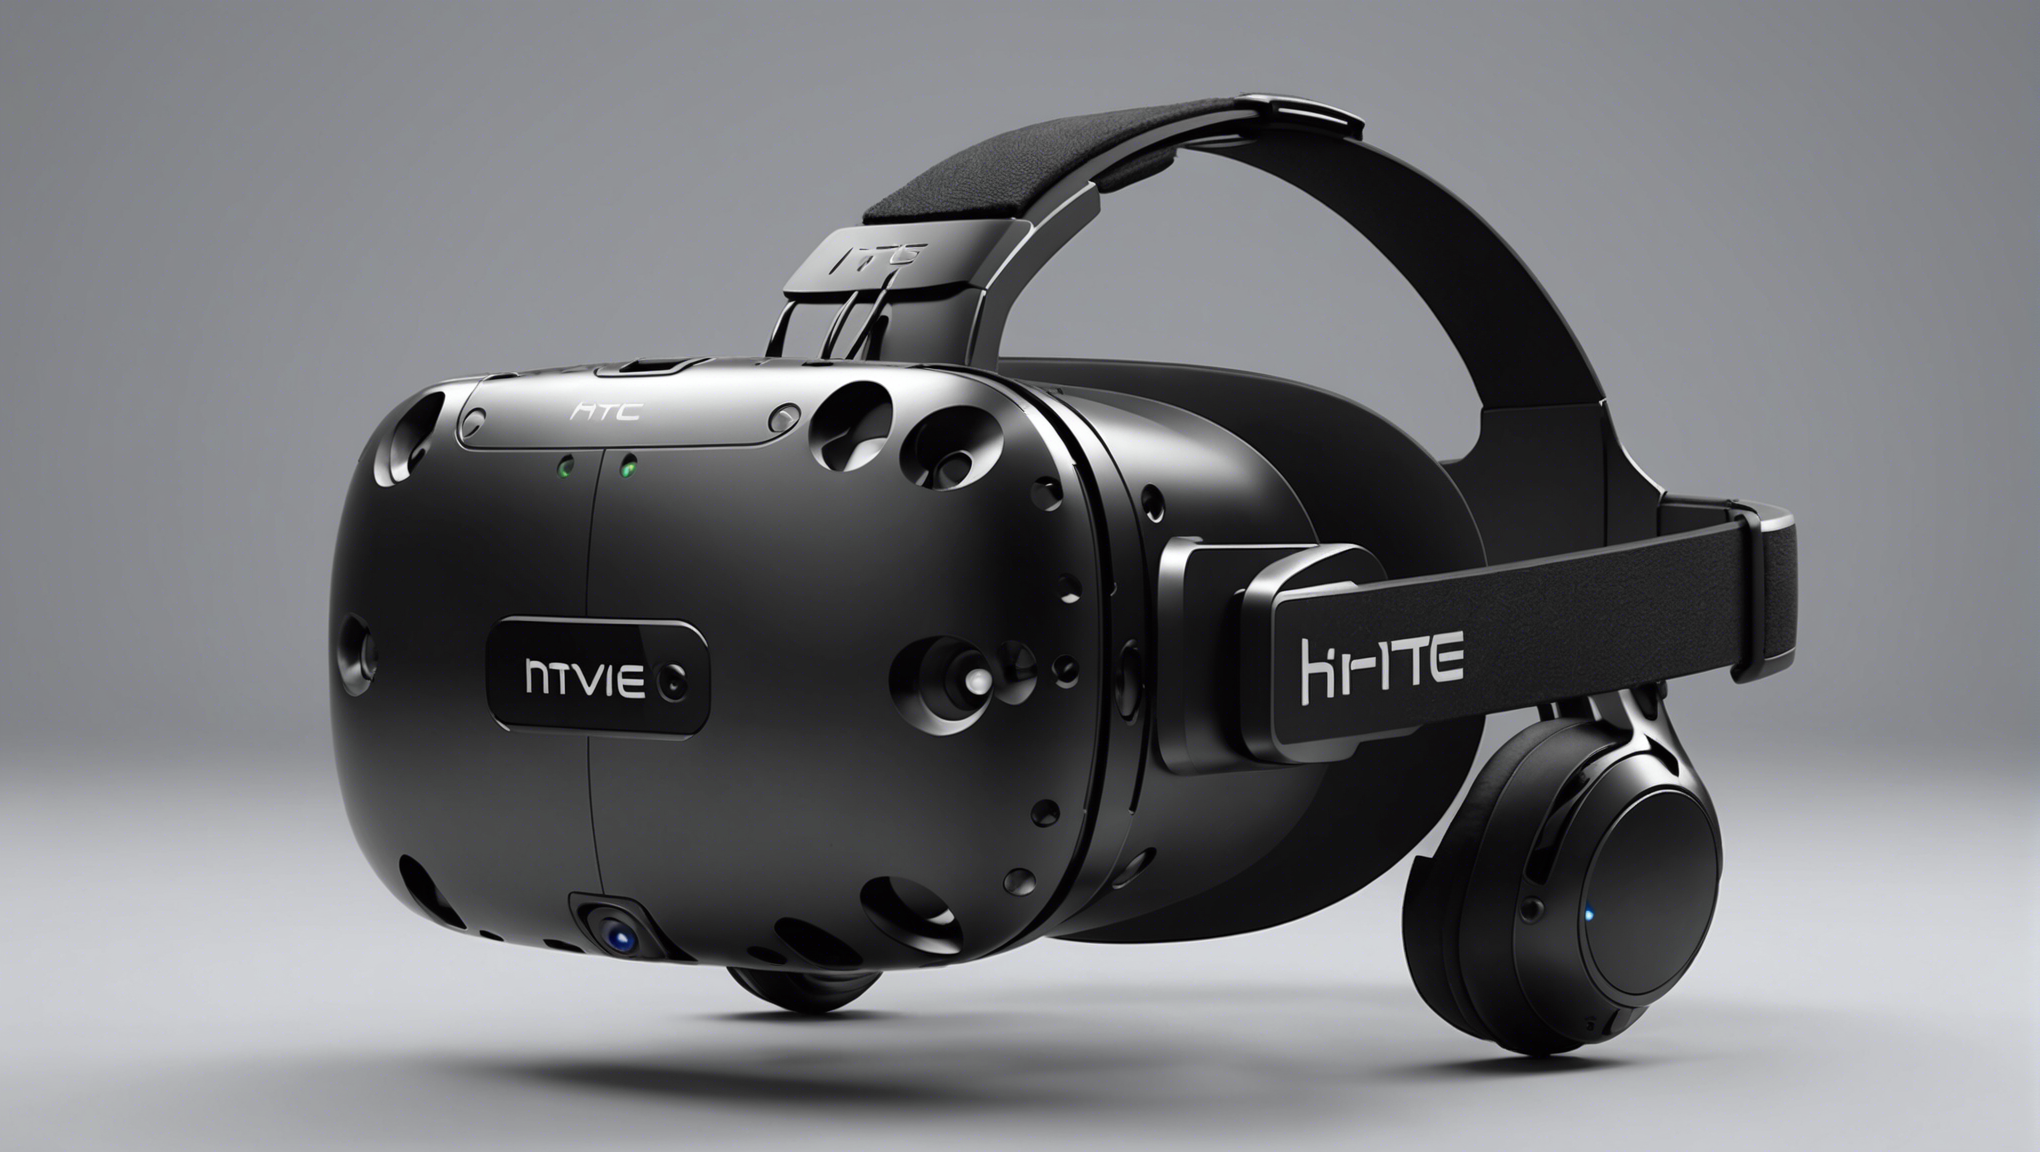 découvrez ce qu'est le htc vive, un casque de réalité virtuelle révolutionnaire vous plongeant au cœur de l'action. consultez notre guide pour en savoir plus.